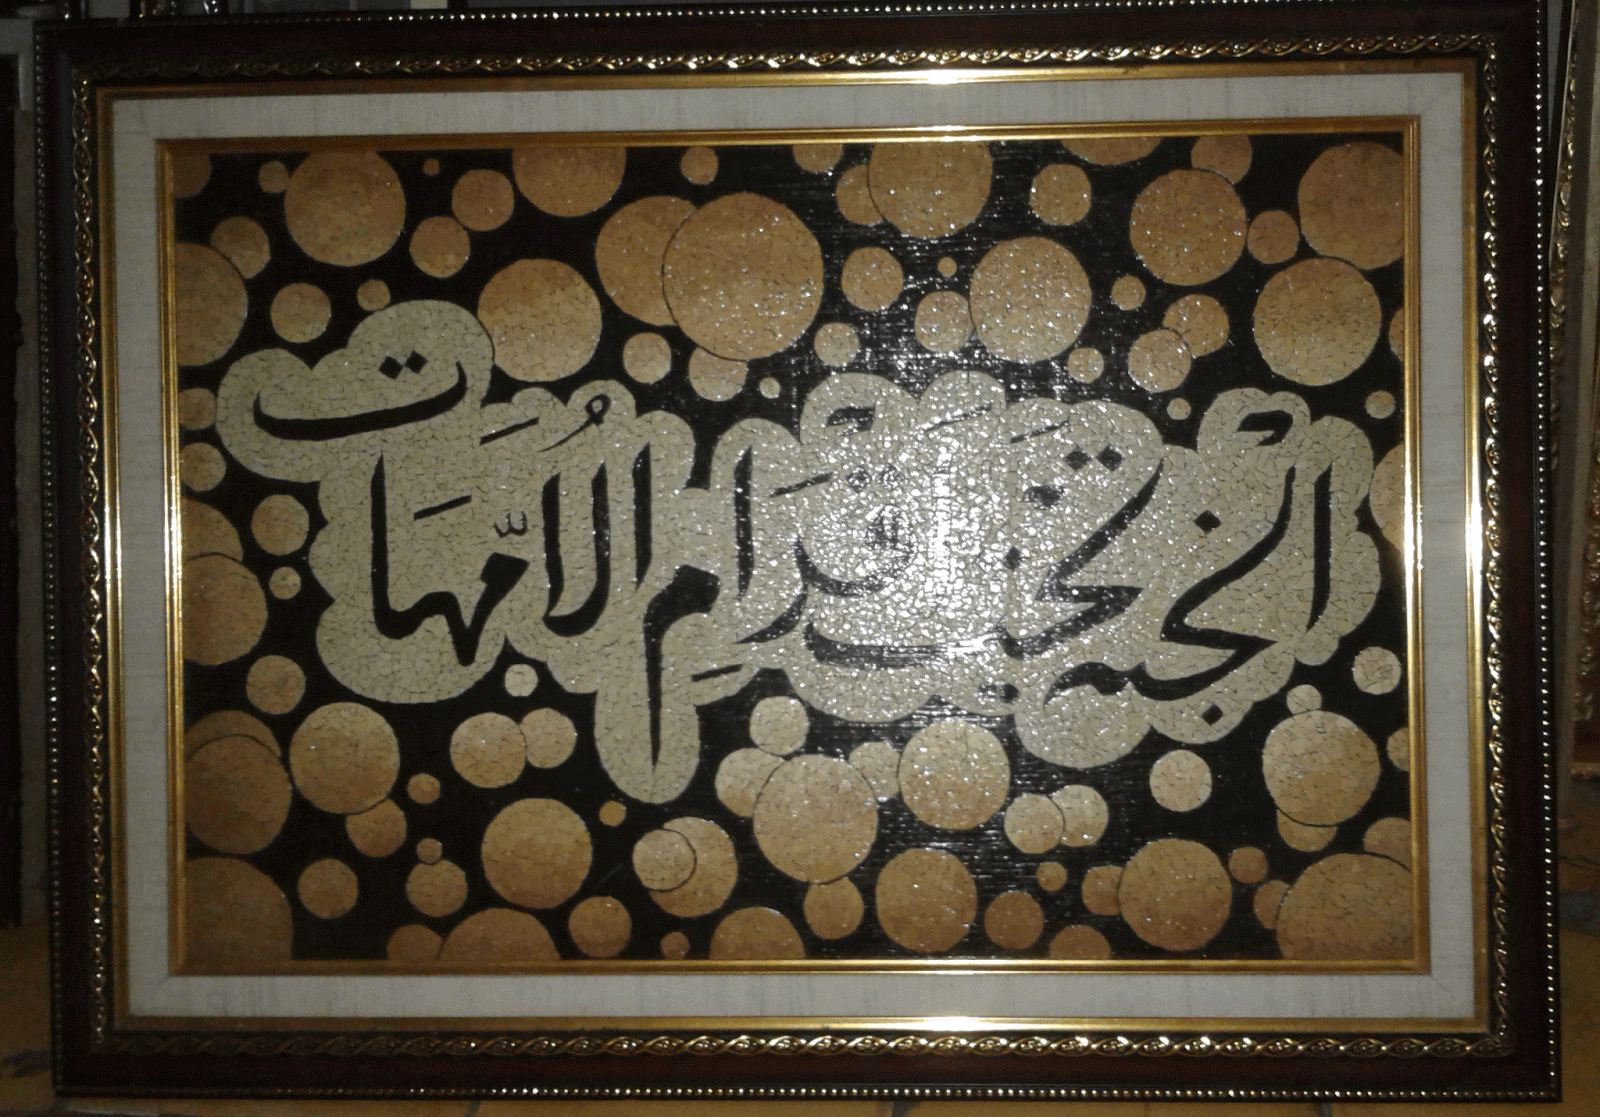 Menjual lukisan unik dari kulit telur,lukisan kaligrafi